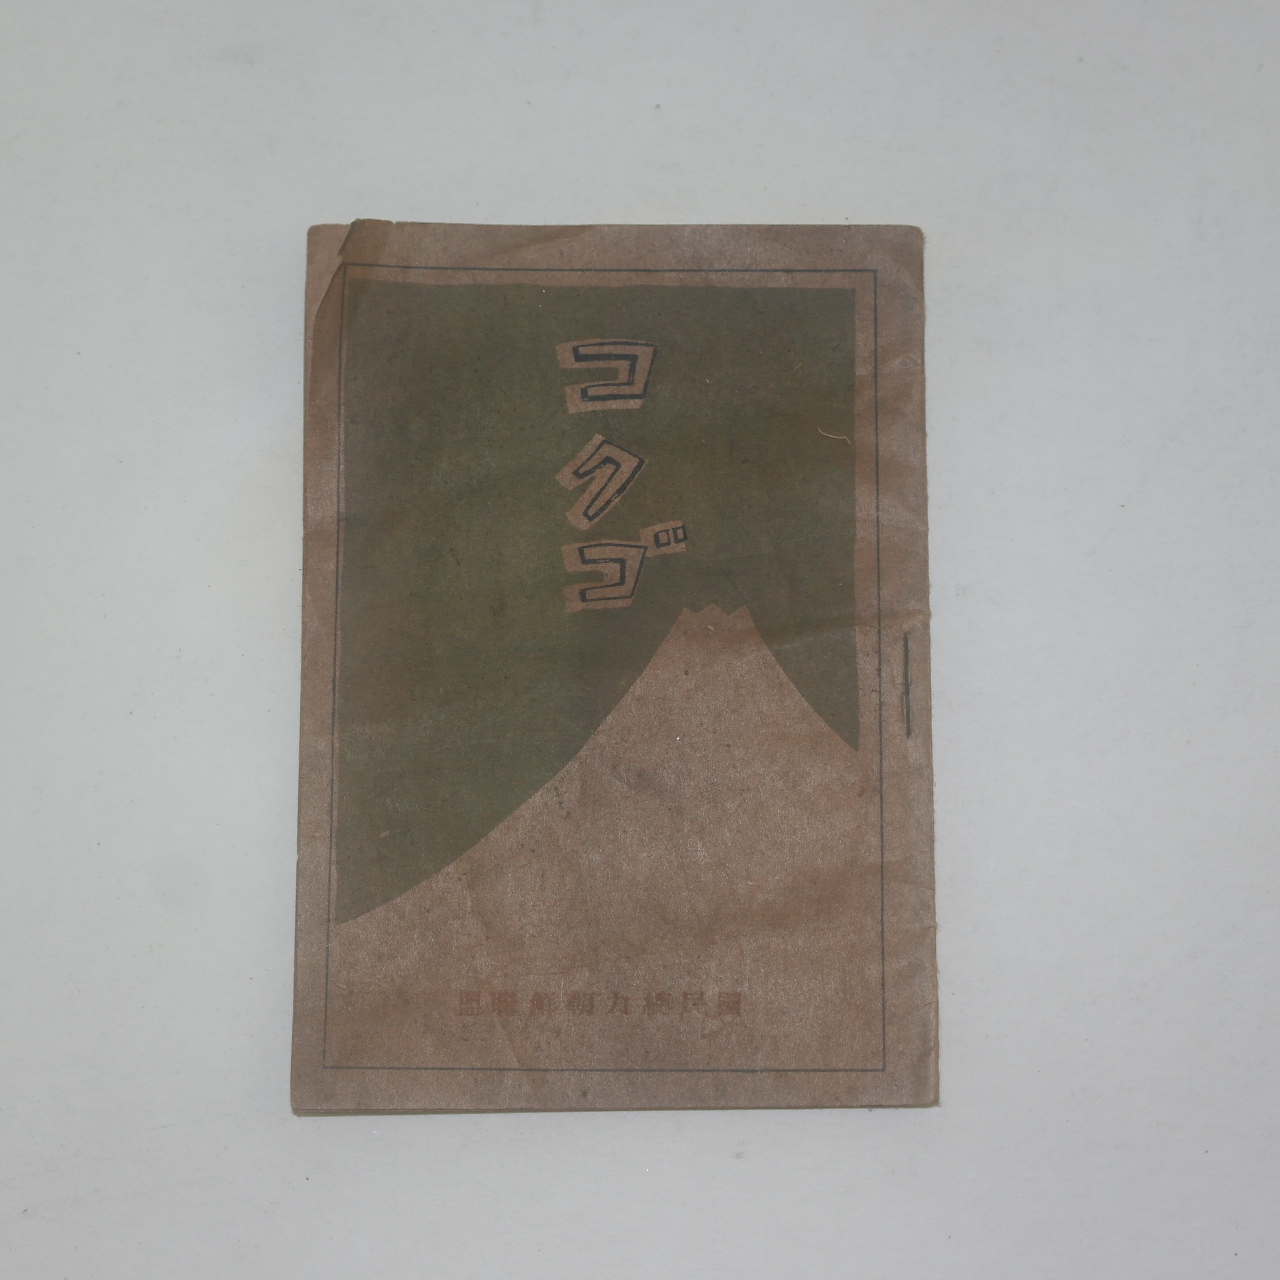 1942년 경성간행 국민총력 조선연맹간행 칼라삽화가있는 수진본